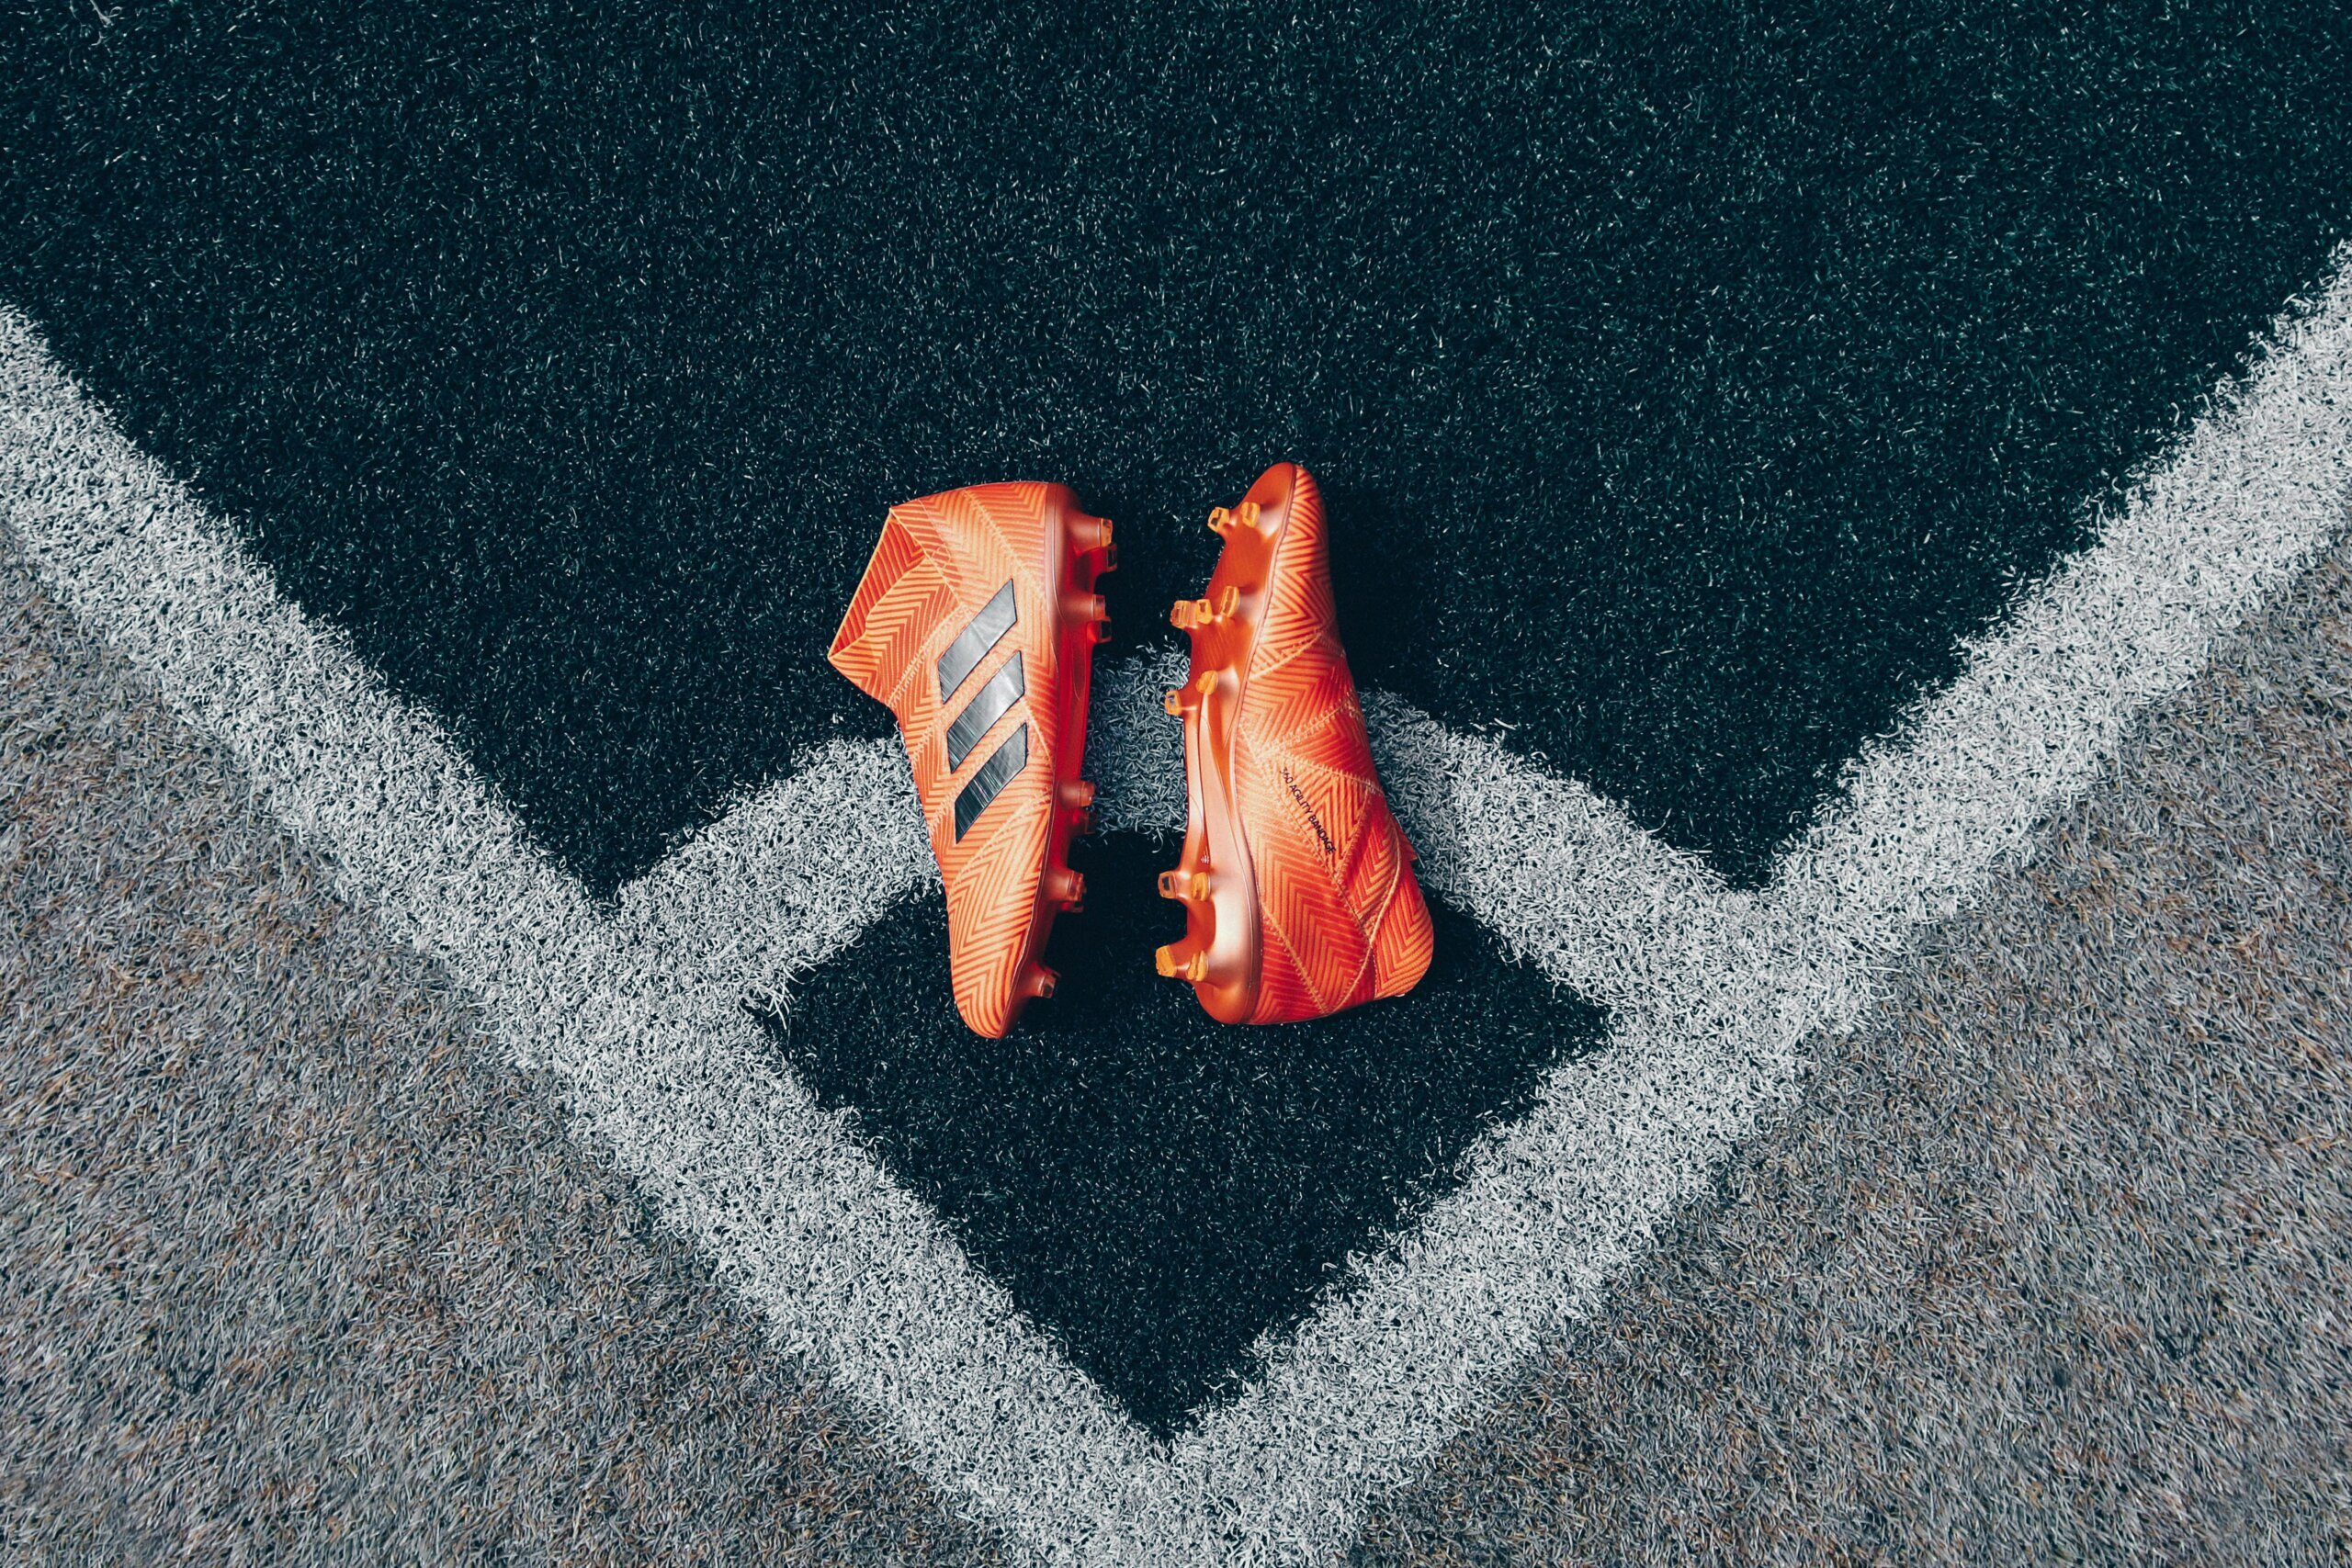 découvrez notre collection de chaussures de football de haute qualité pour des performances exceptionnelles sur le terrain. trouvez votre paire parfaite dès maintenant !